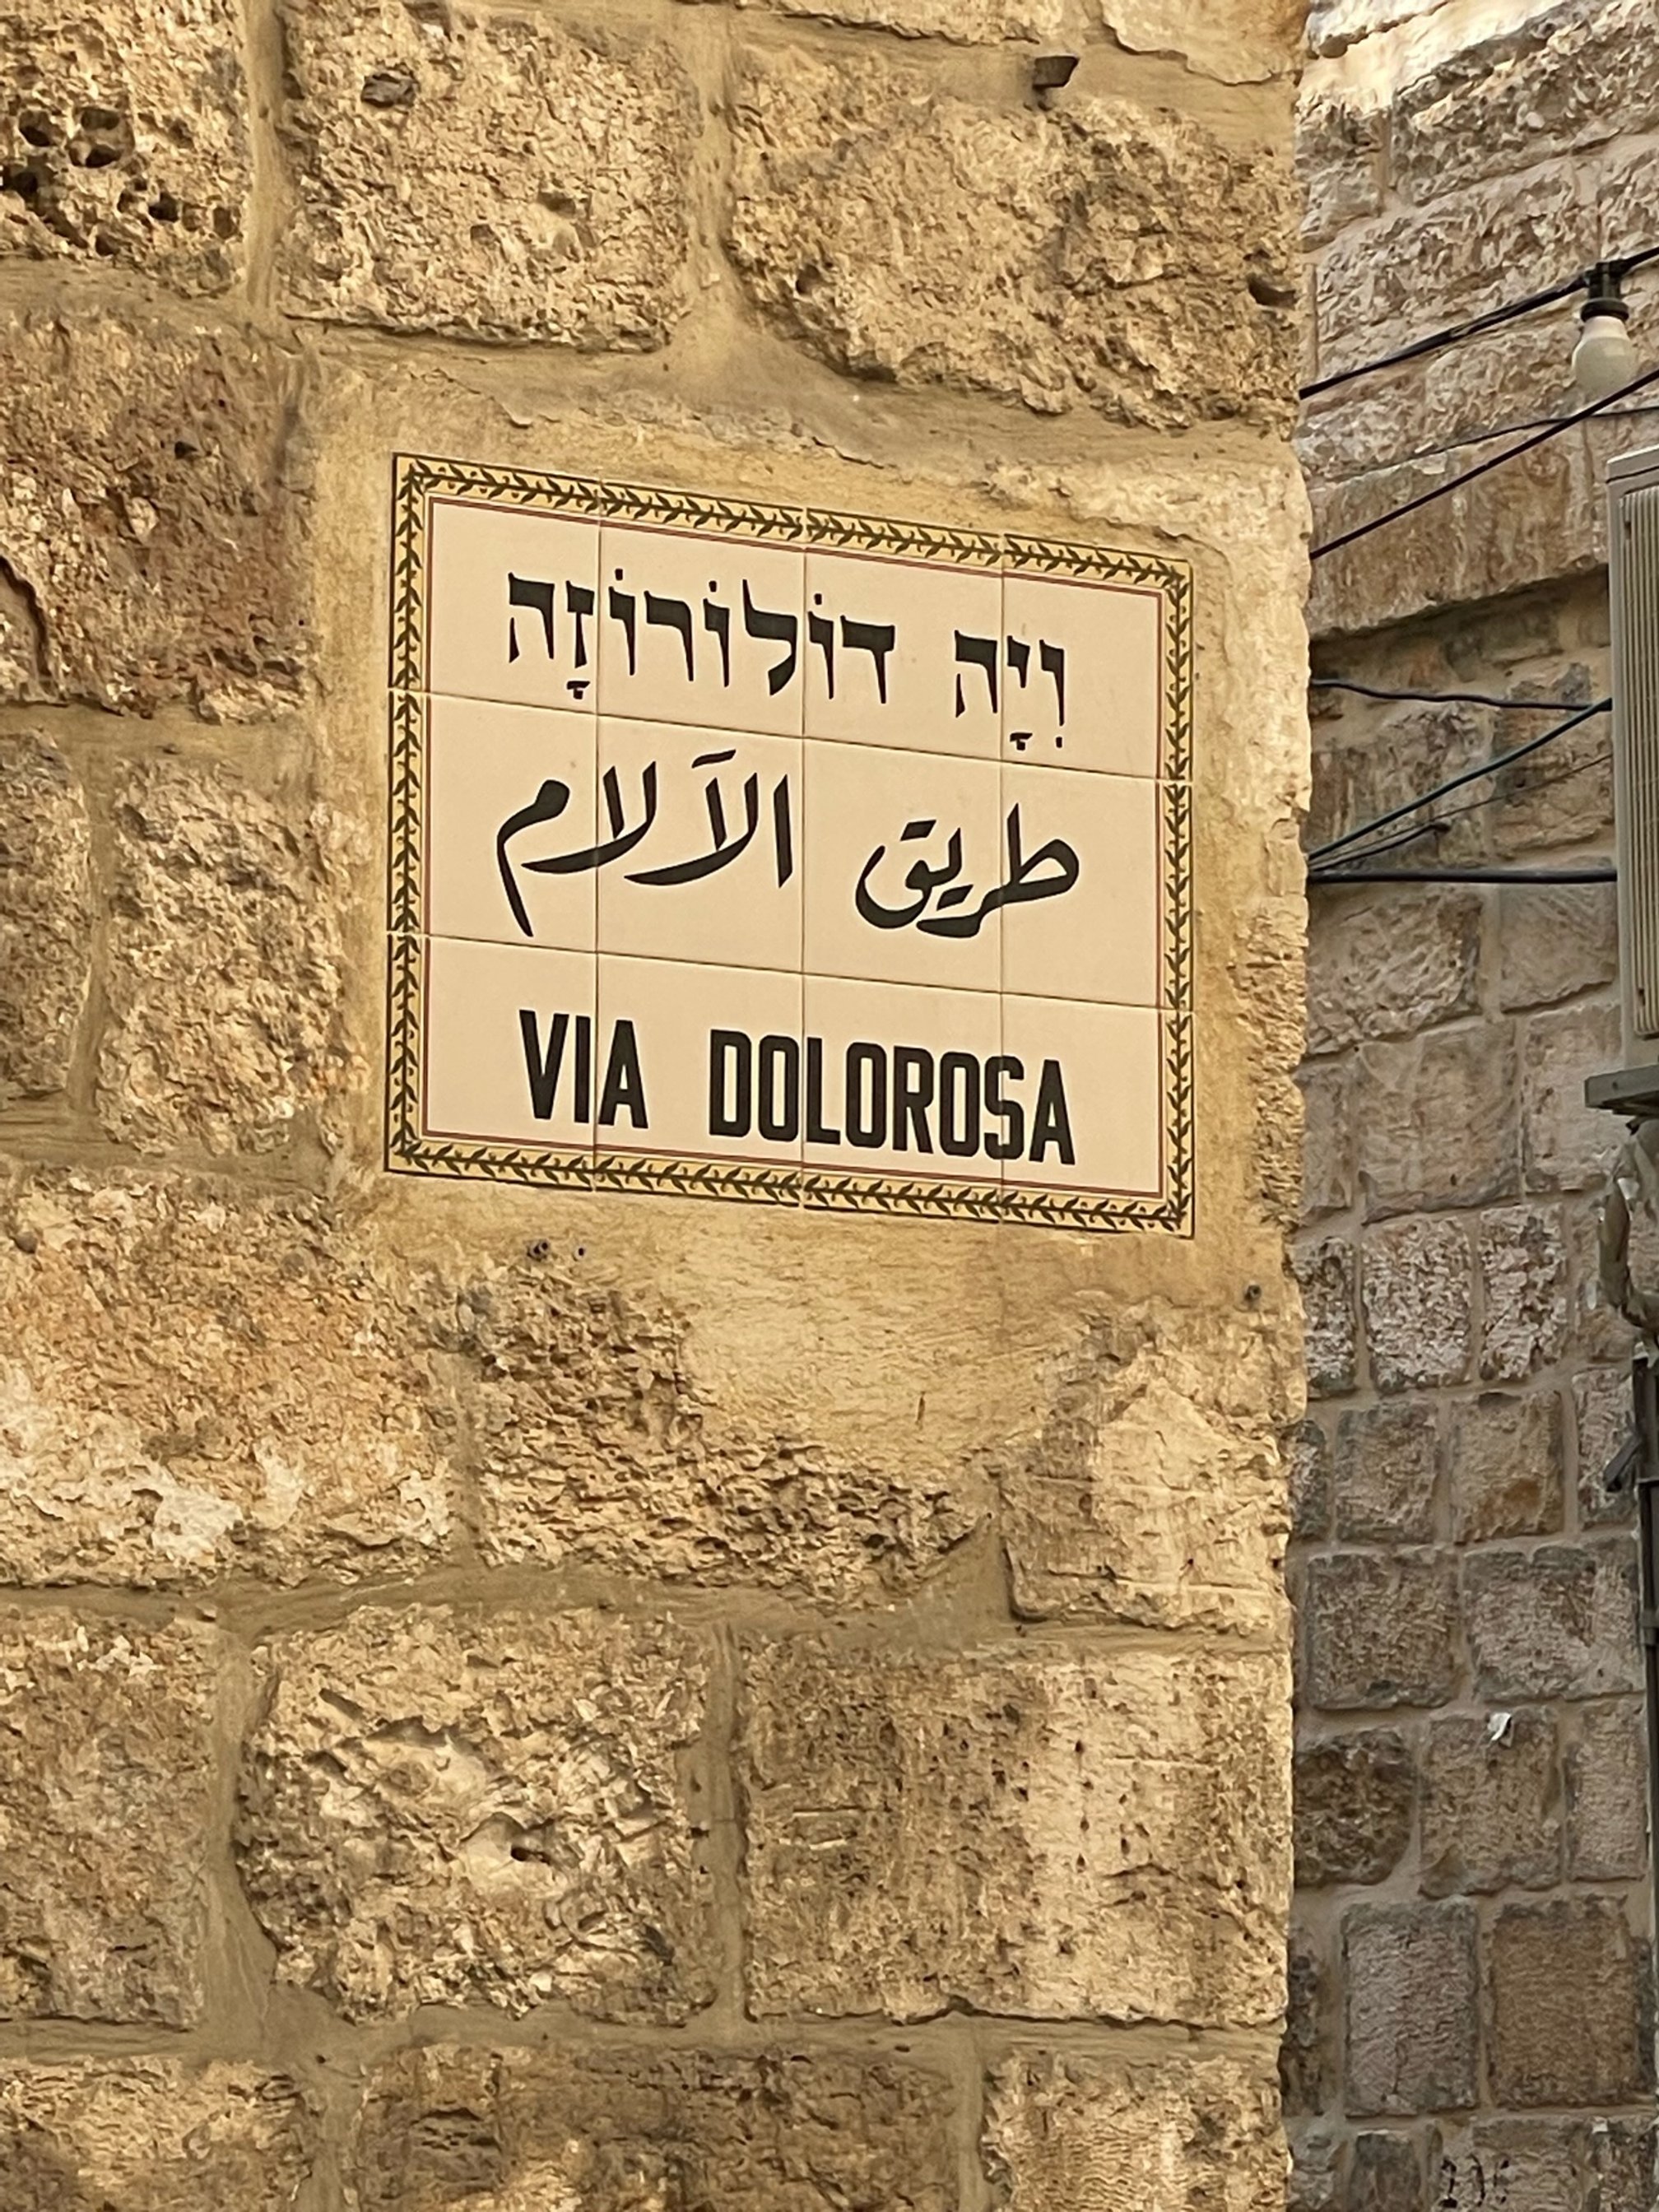 Via Dolorosa -The Way of the Cross